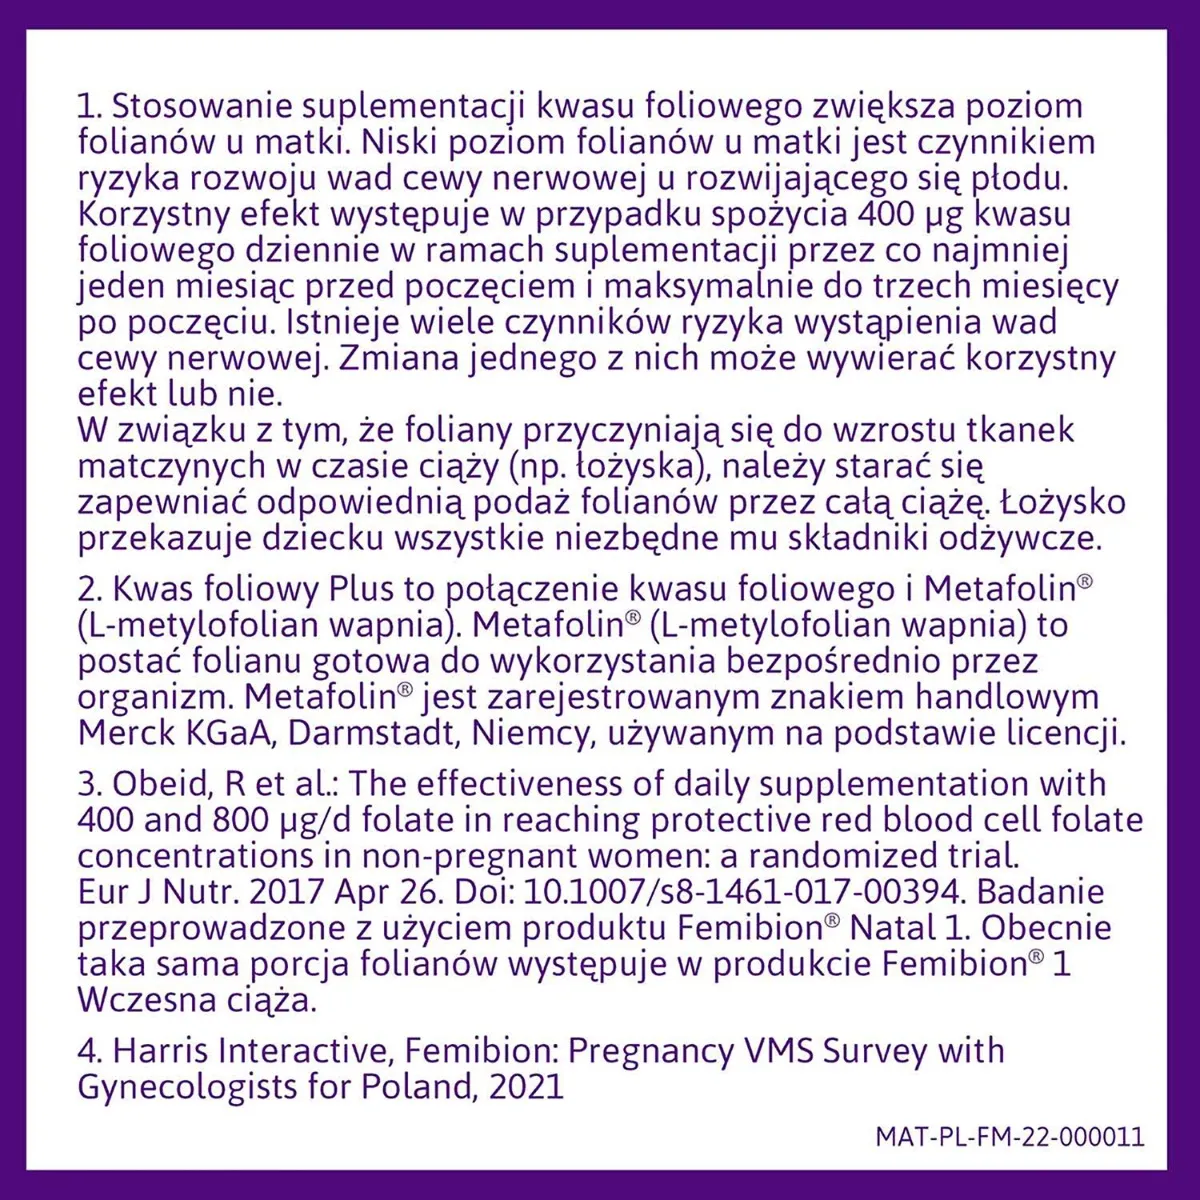 Femibion 0 Planowanie ciąży, 28 tabletek 